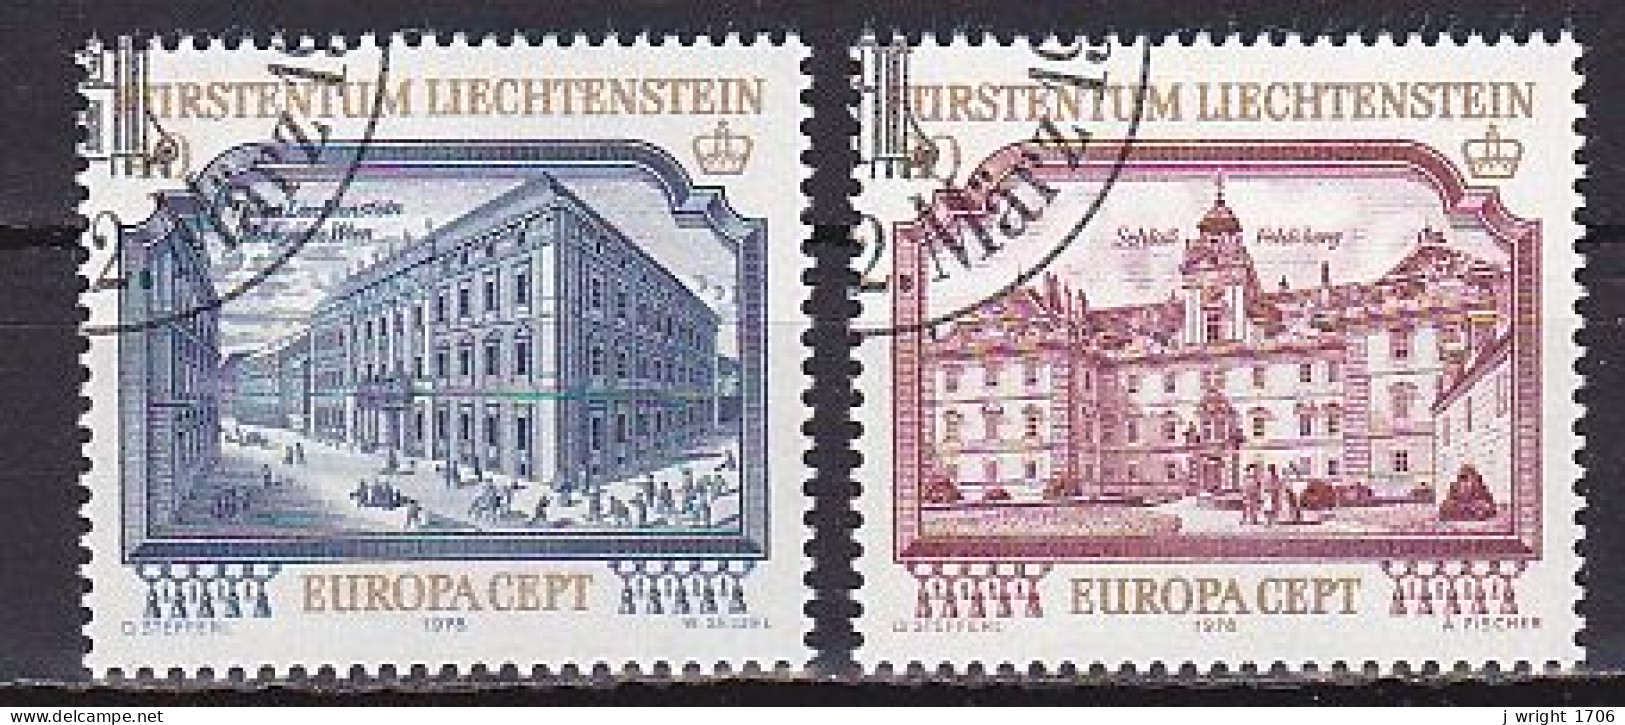 Liechtenstein, 1978, Europa CEPT, Set, CTO - Used Stamps